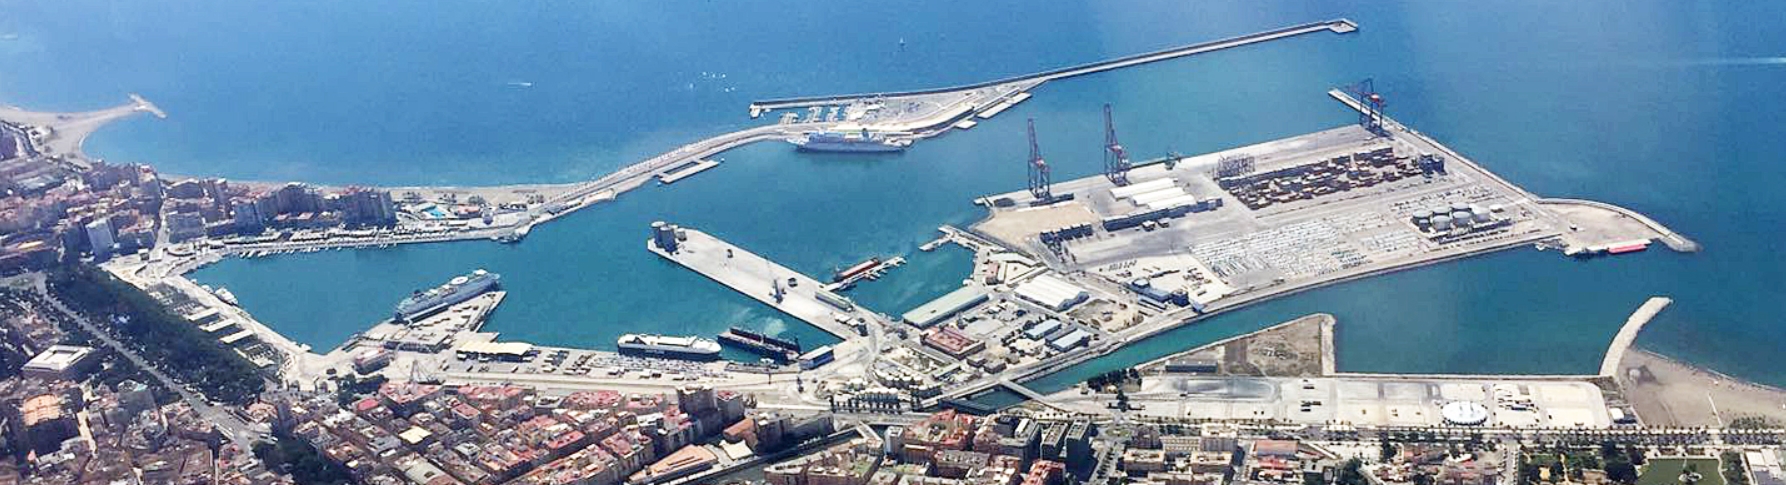 Explora el corazón de Málaga: El muelle 2 puerto de málaga 1